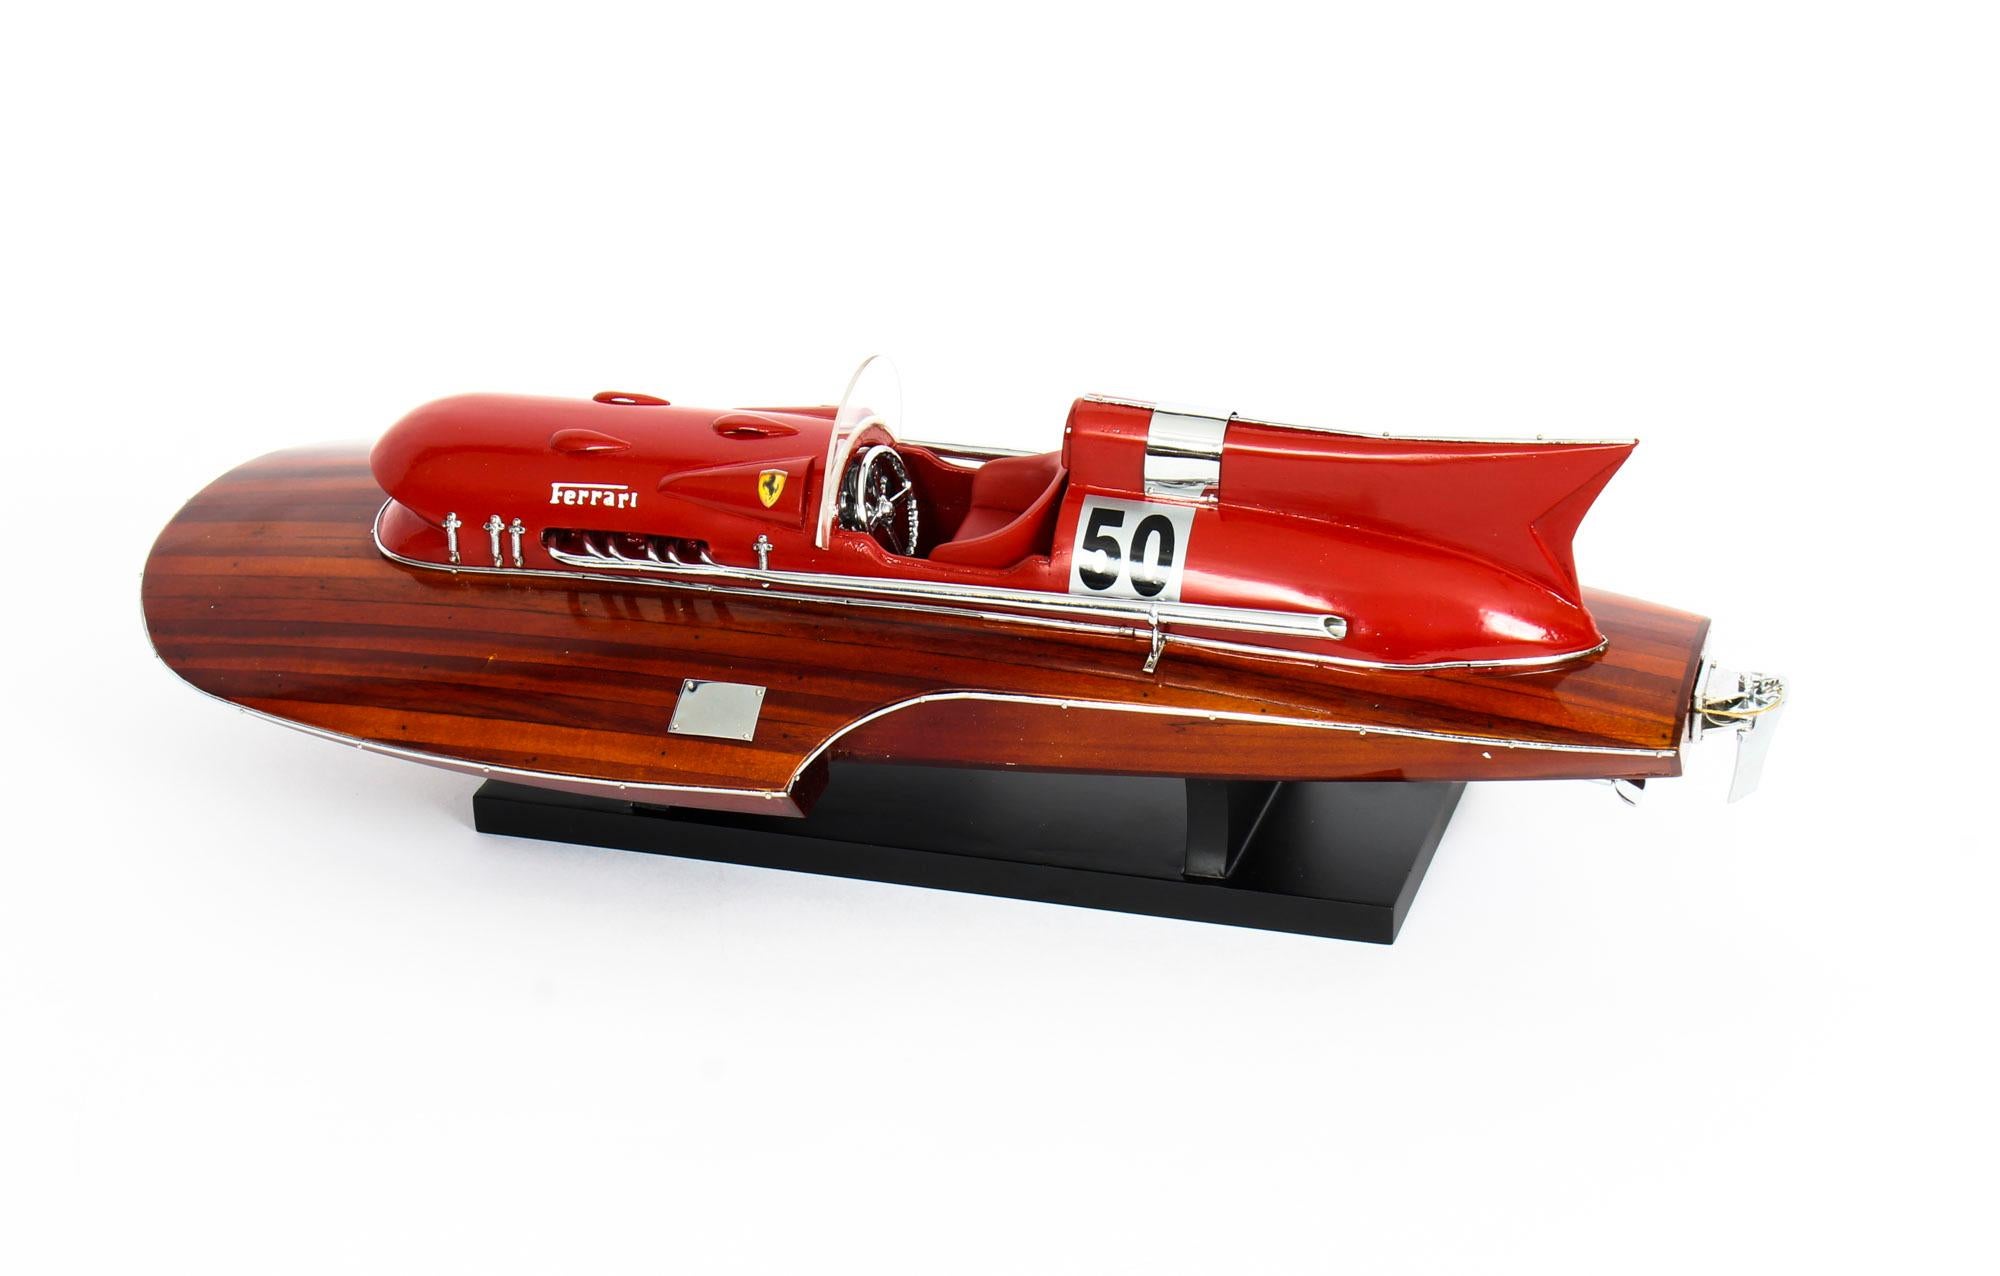 Wood Vintage Model of a Ferrari Hydroplane 1954